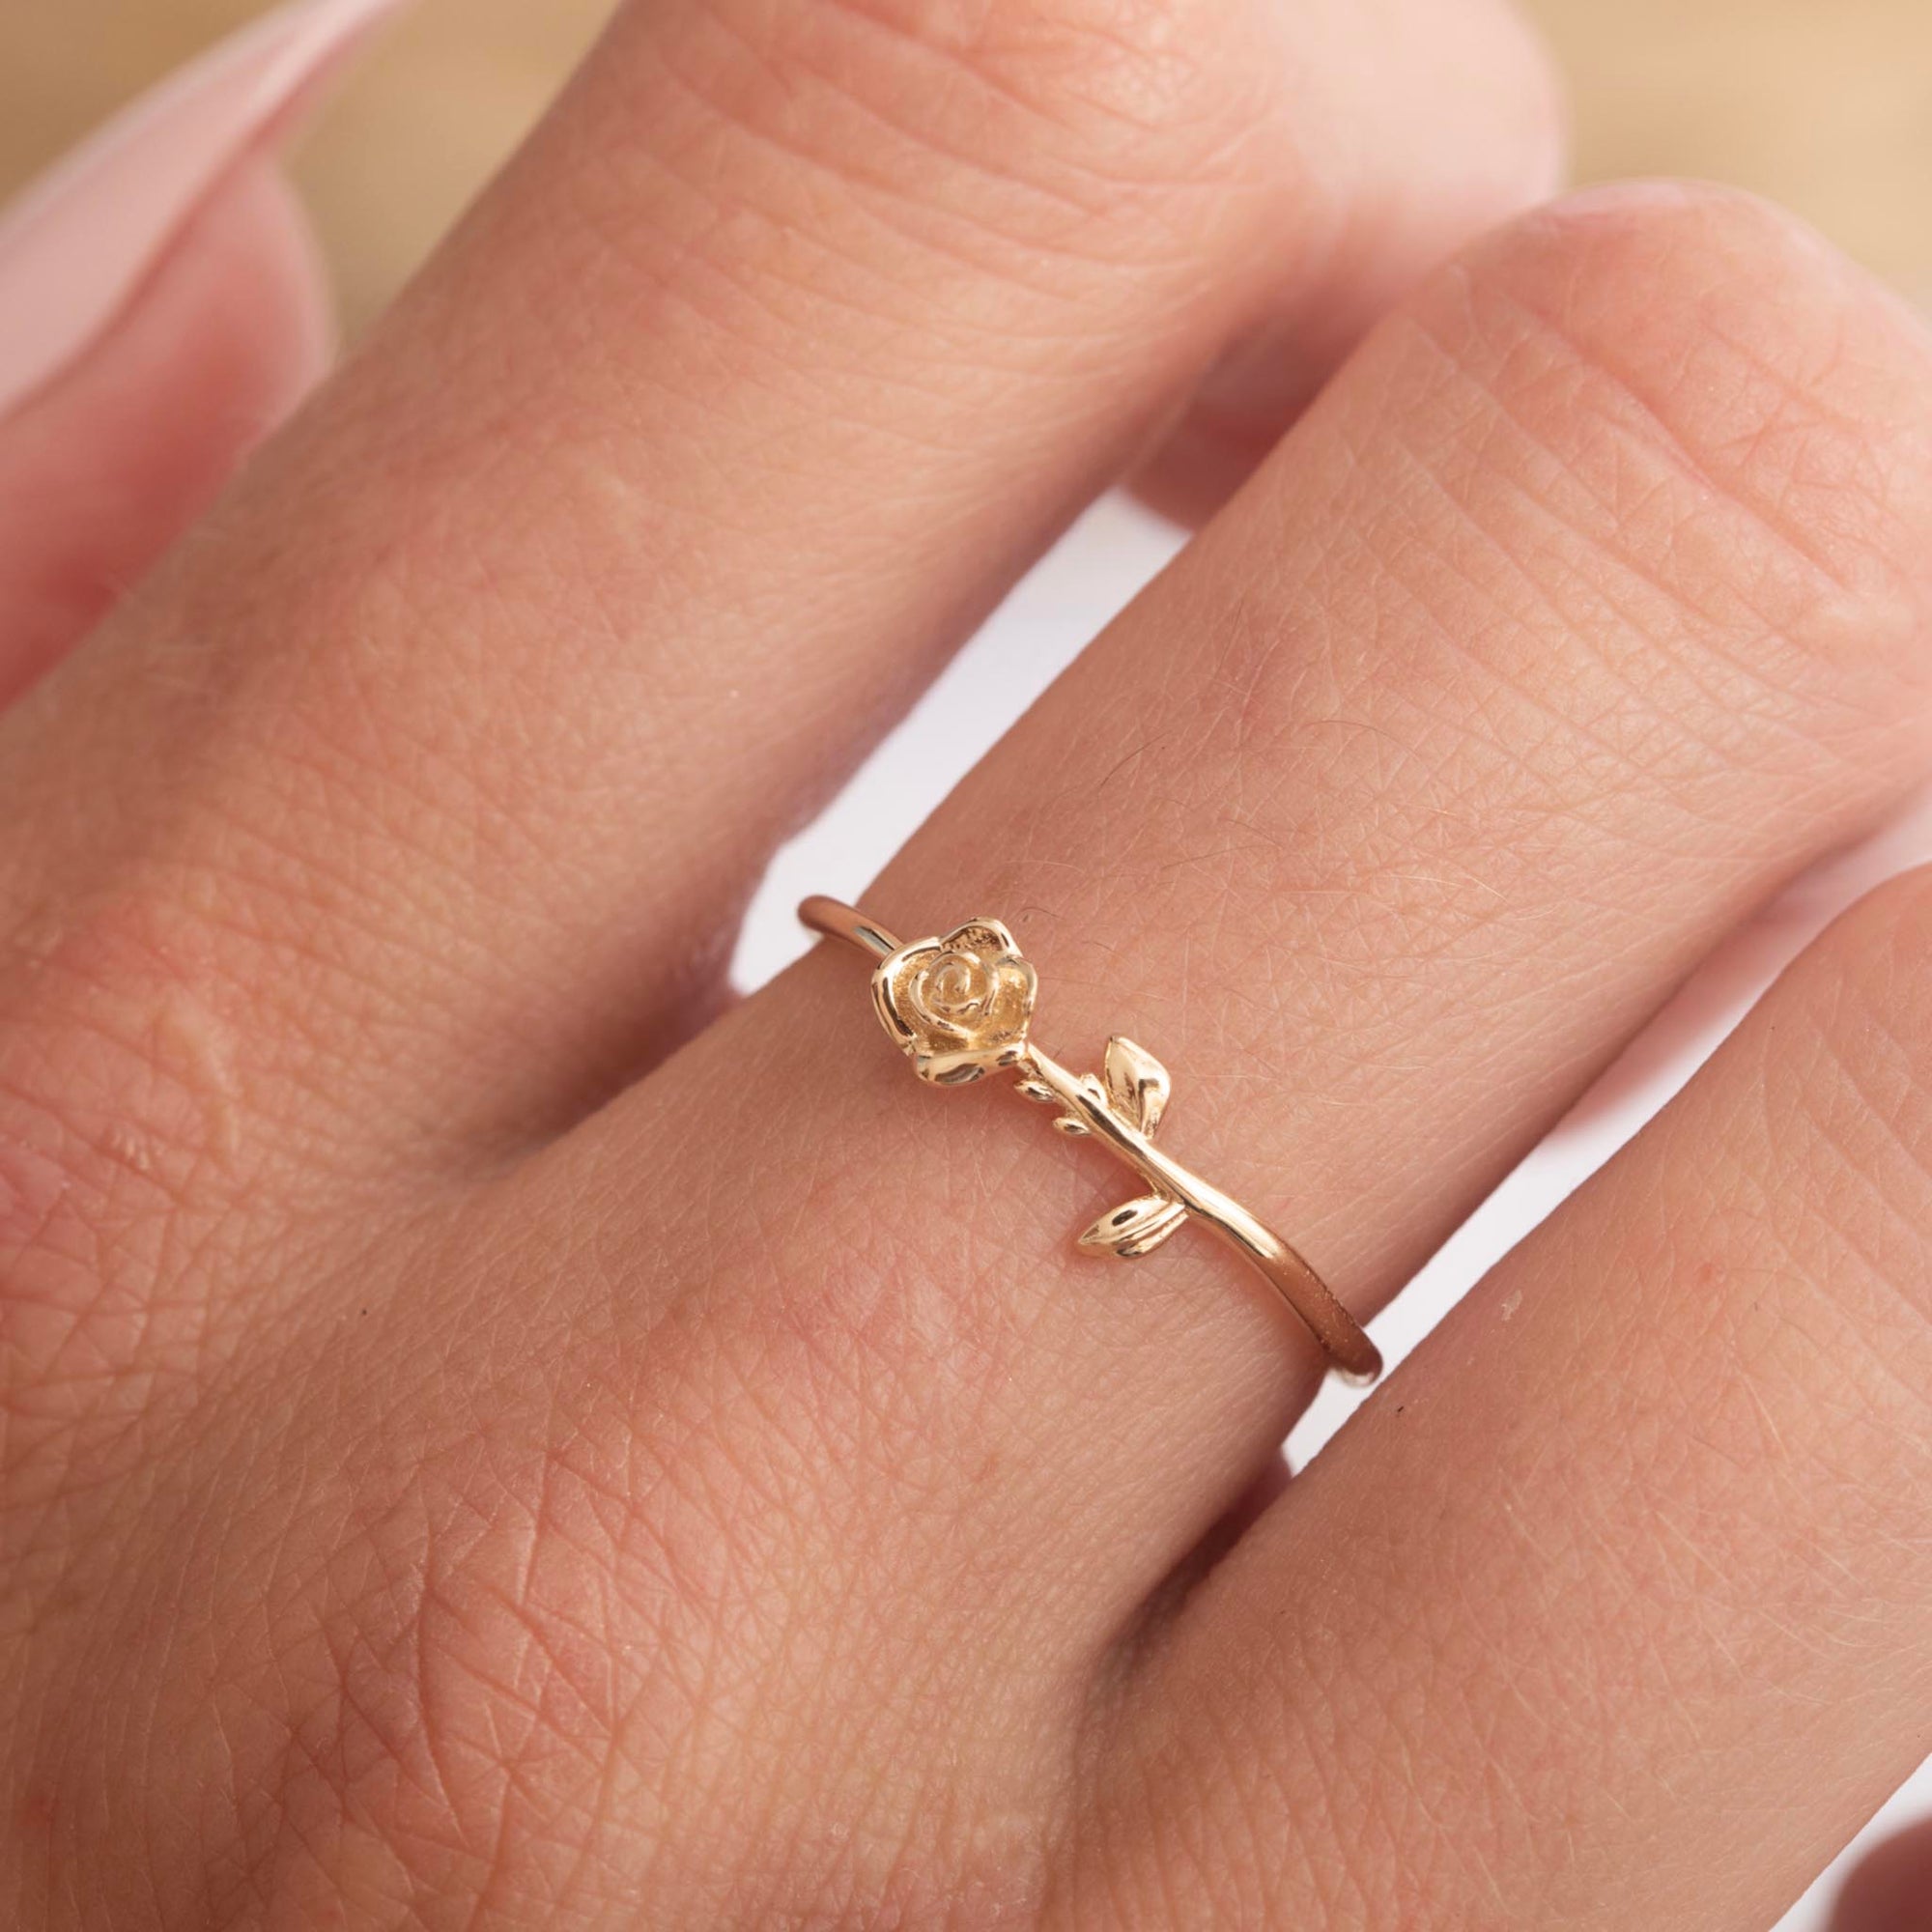 Pin on Rose gold diamond ring